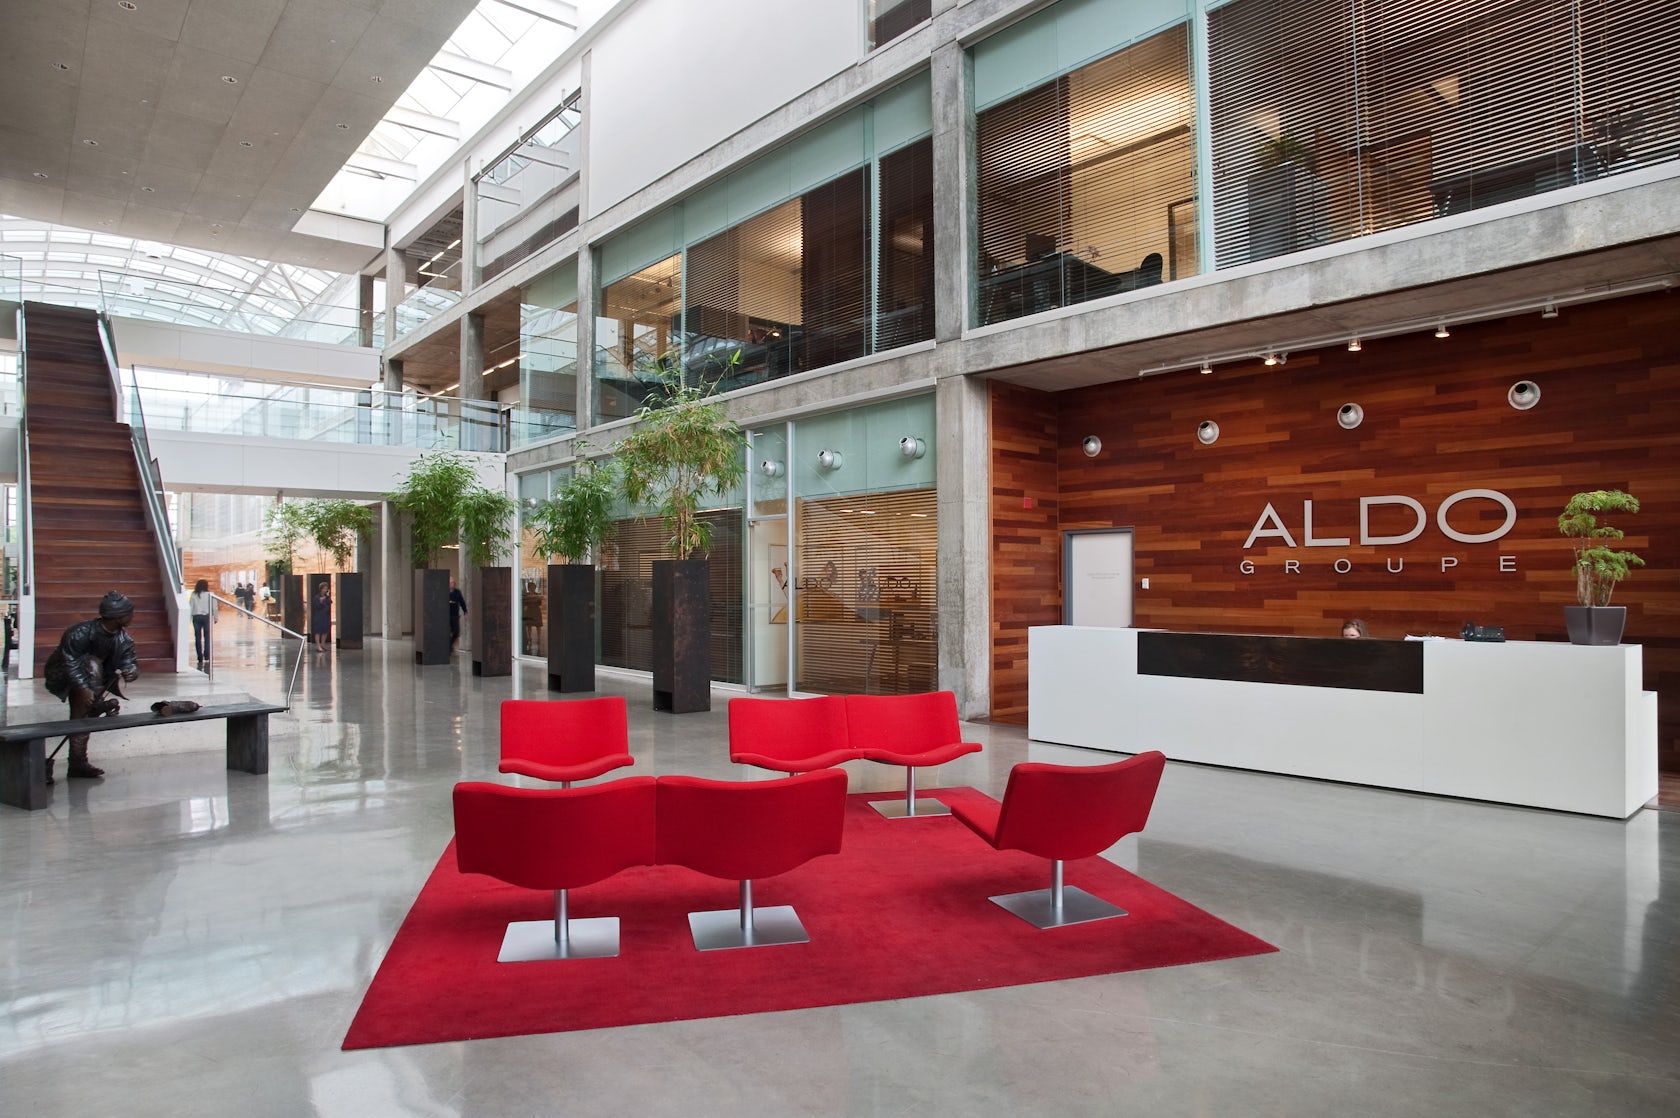 Groupe Aldo - Office Aedifica architecture + design Architizer